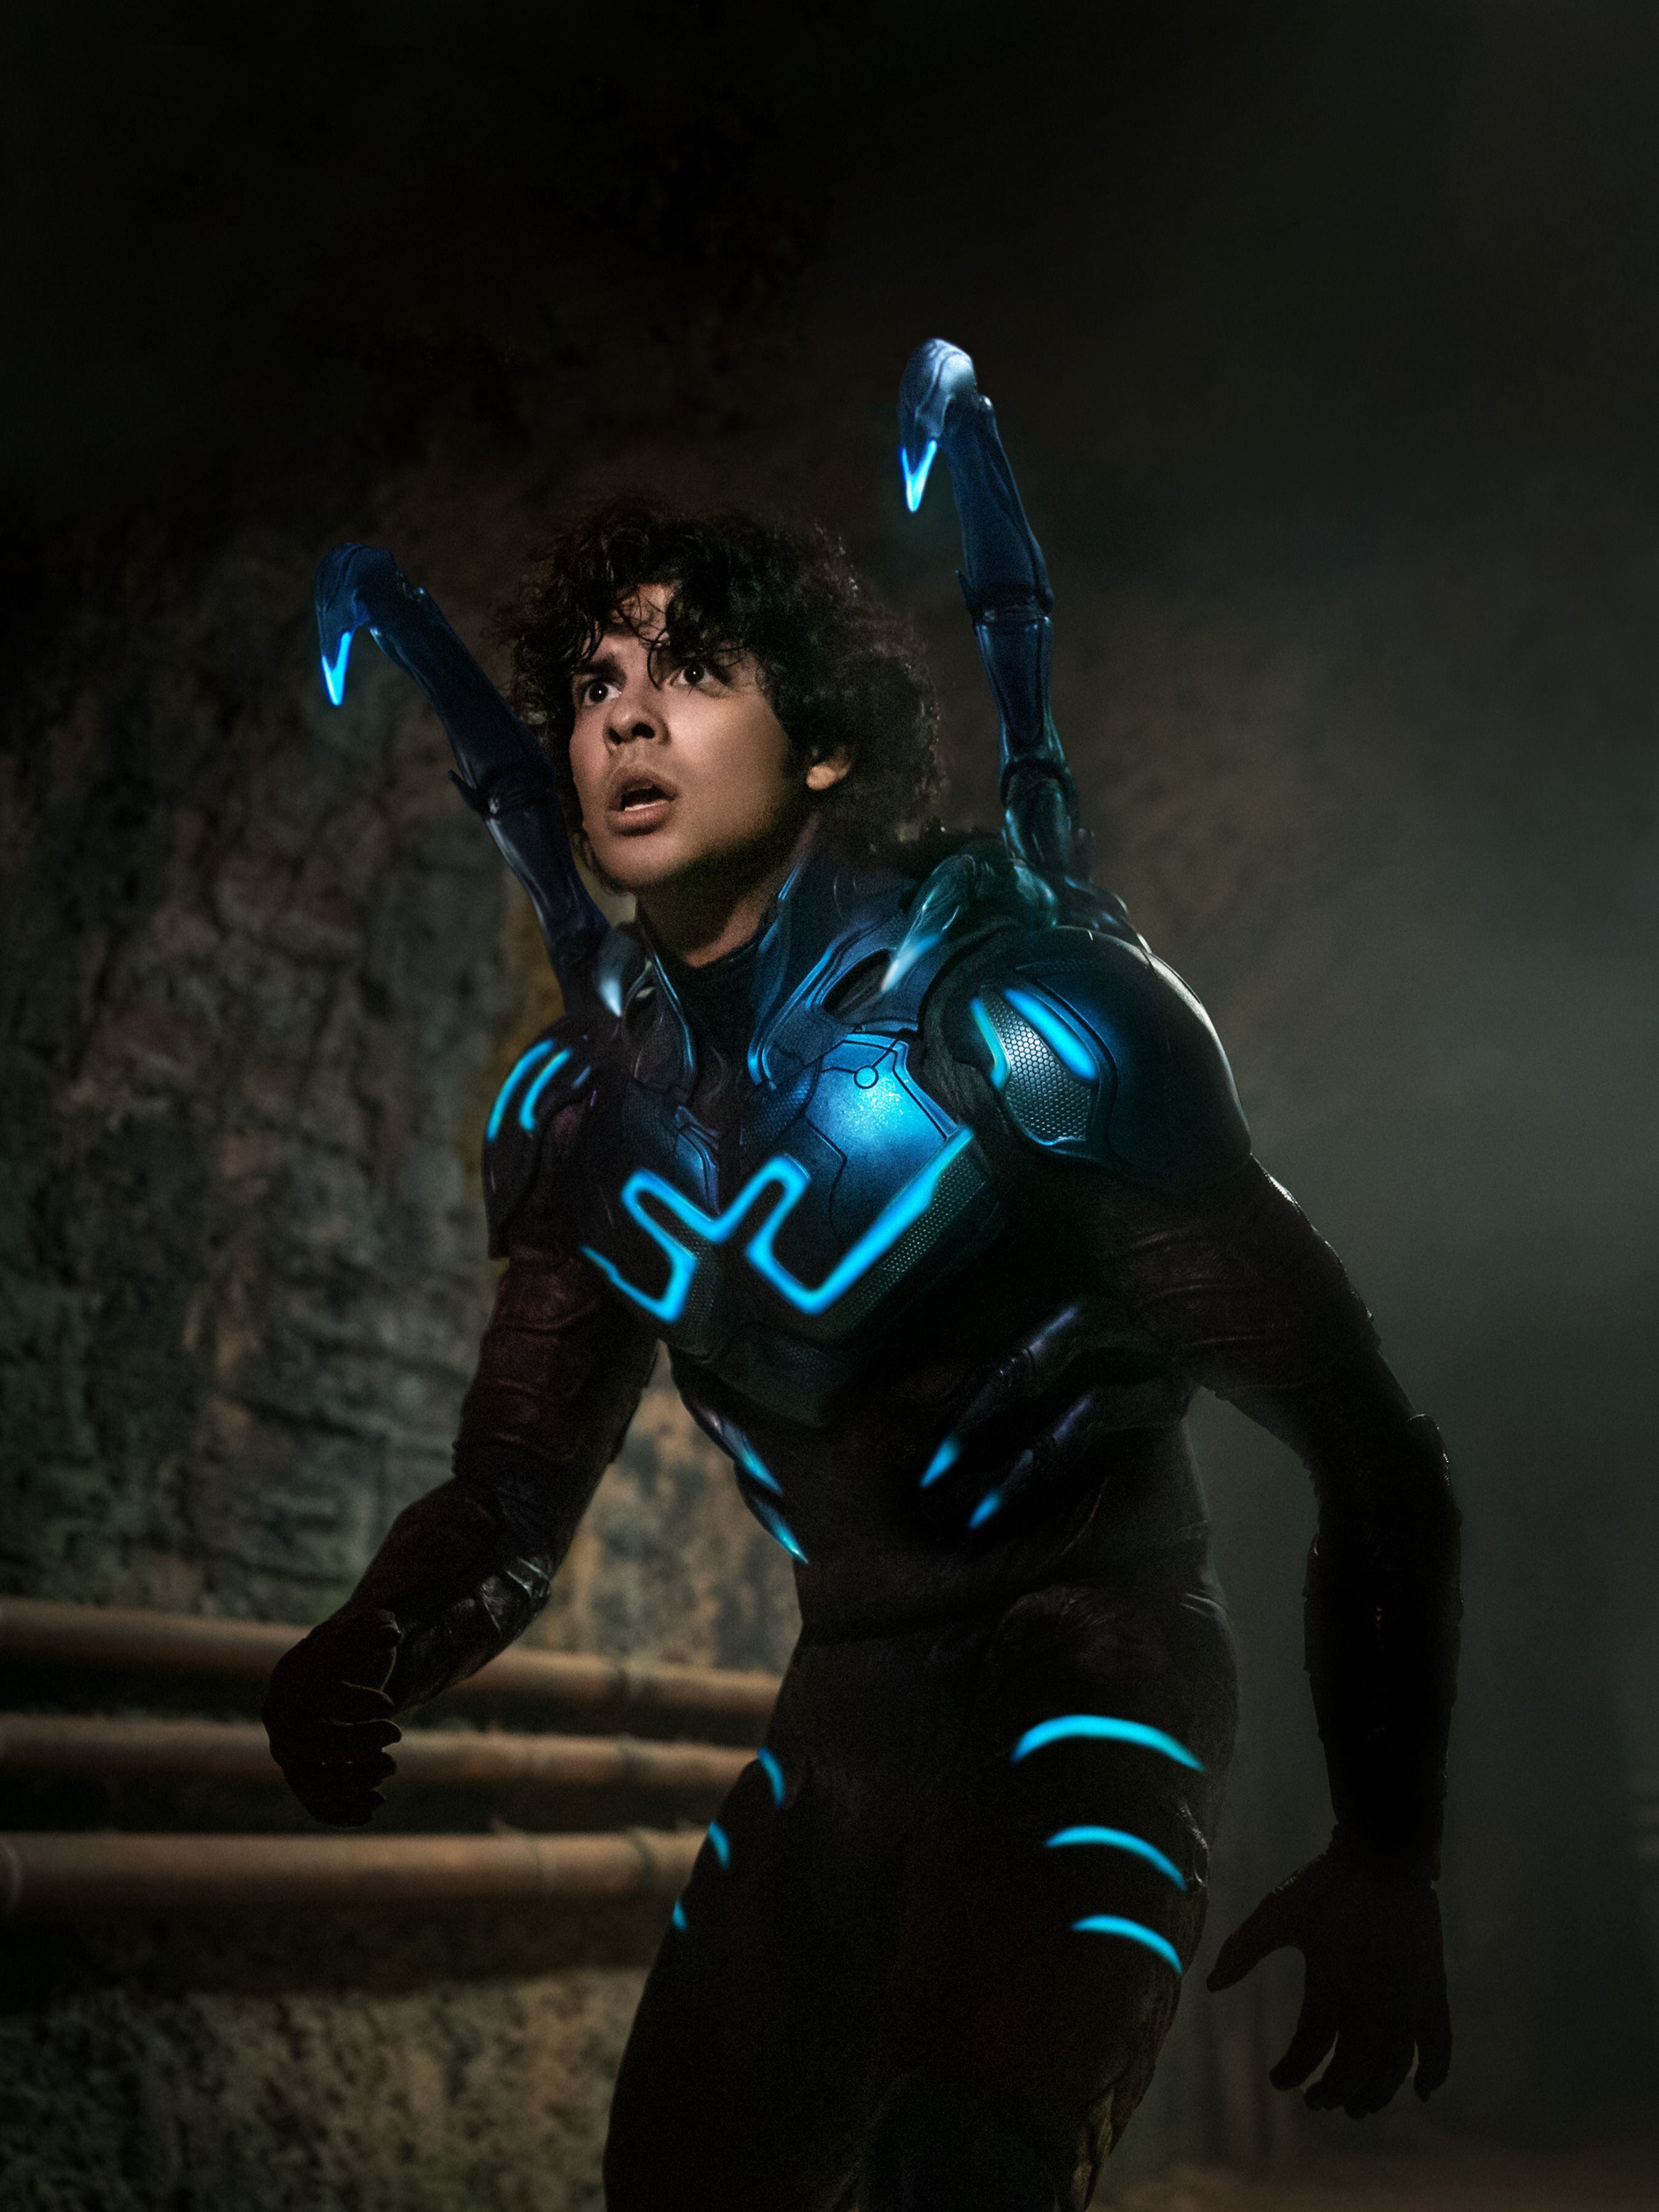 El actor estadounidense Xolo Maridueña interpreta a Jaime Reyes, quien se convierte en el superhéroe Blue Beetle.